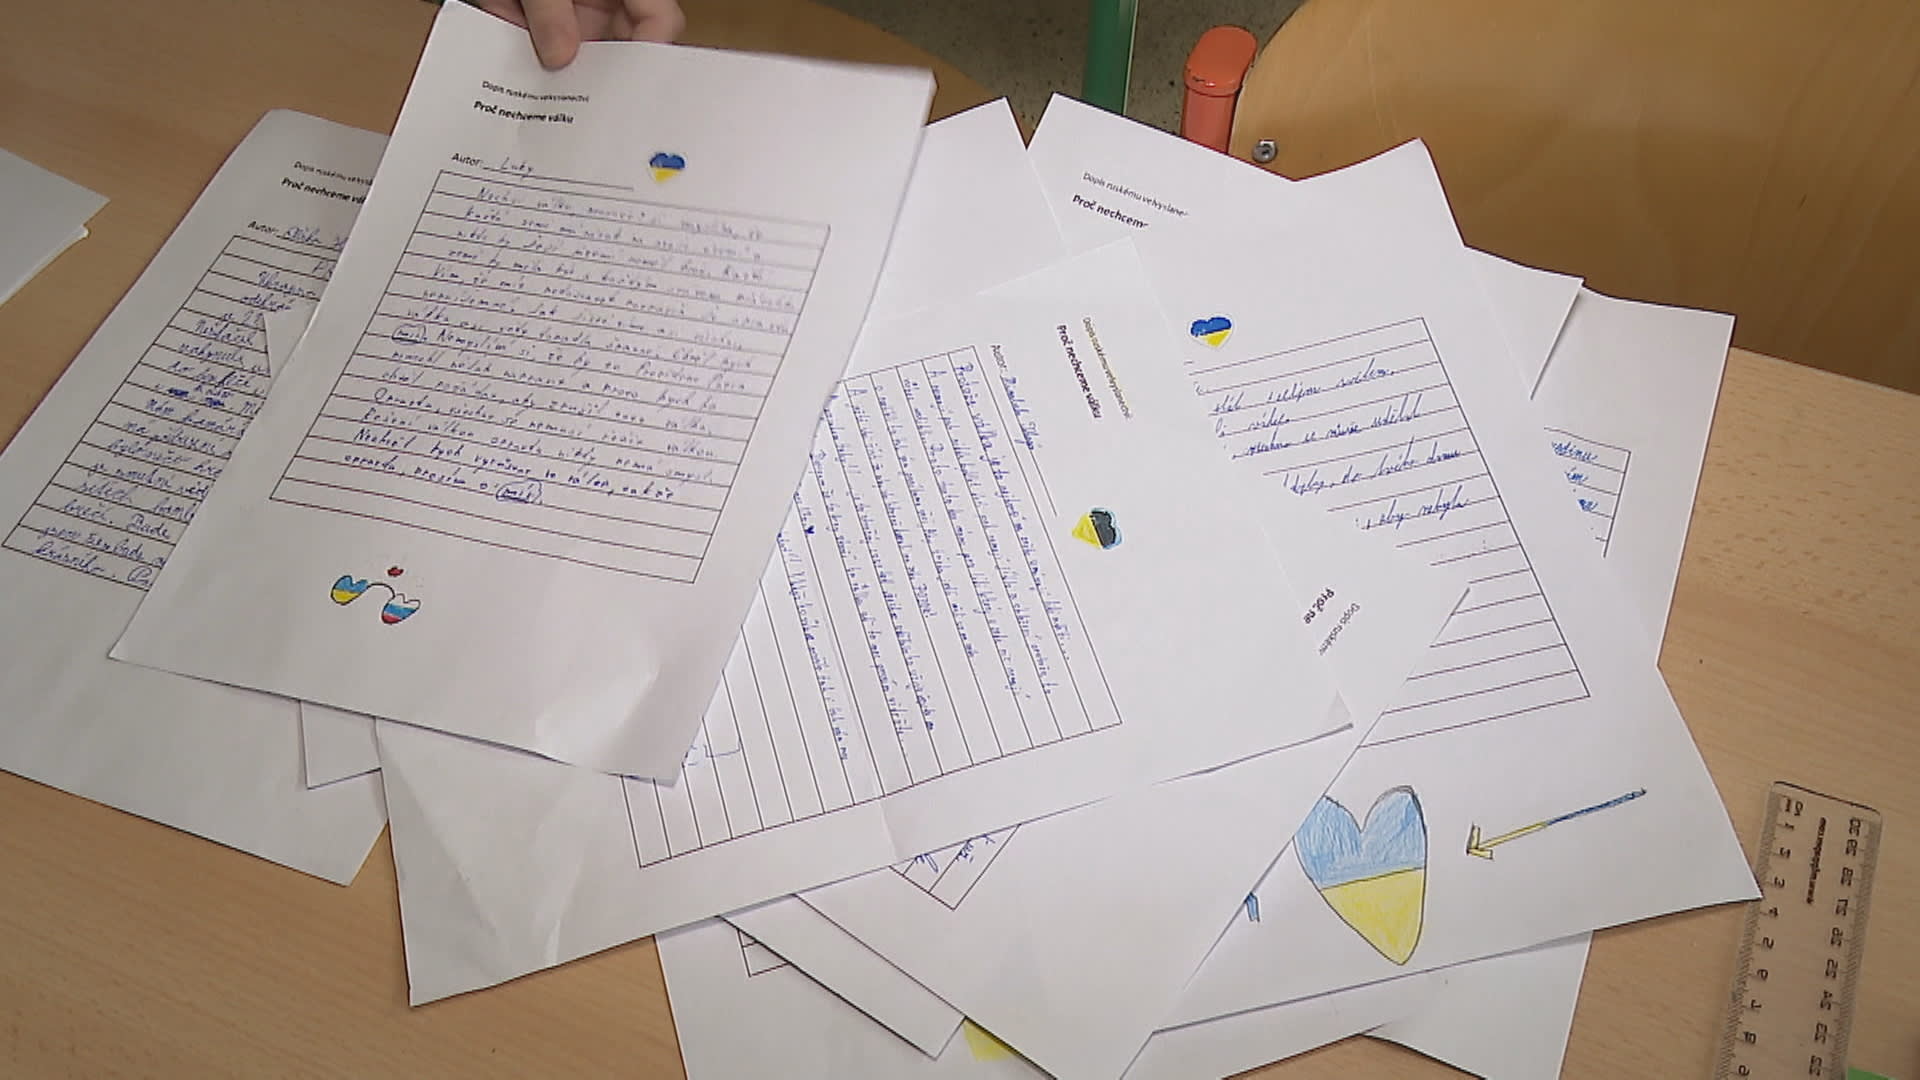 Děti v dopisech převážně prosí, ať válka na Ukrajině skončí.